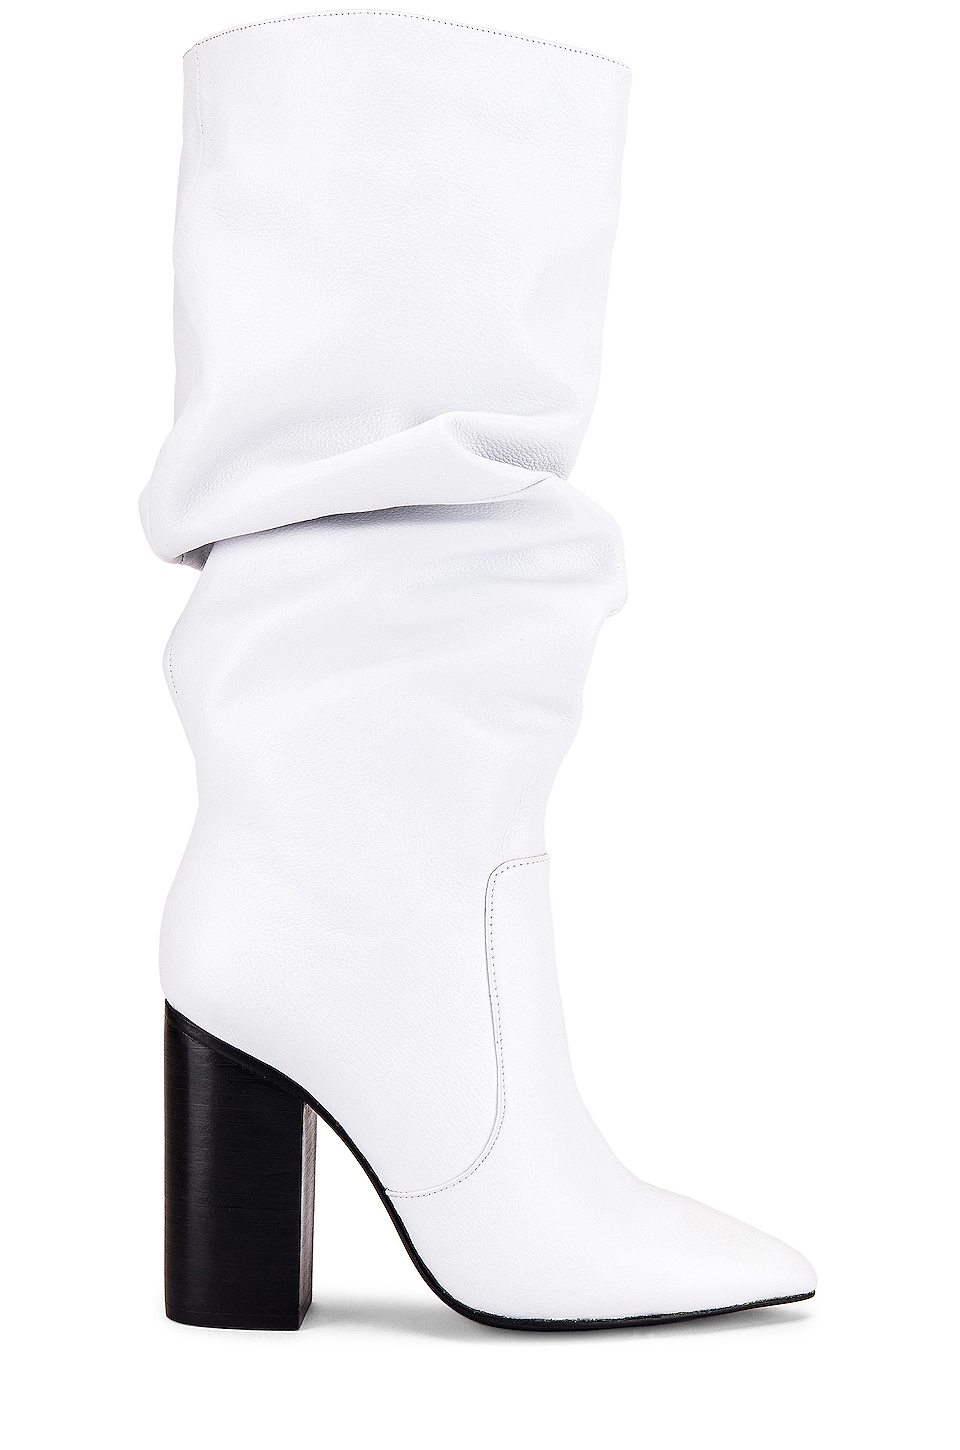 Sol Sana Celine Boot in White | REVOLVE